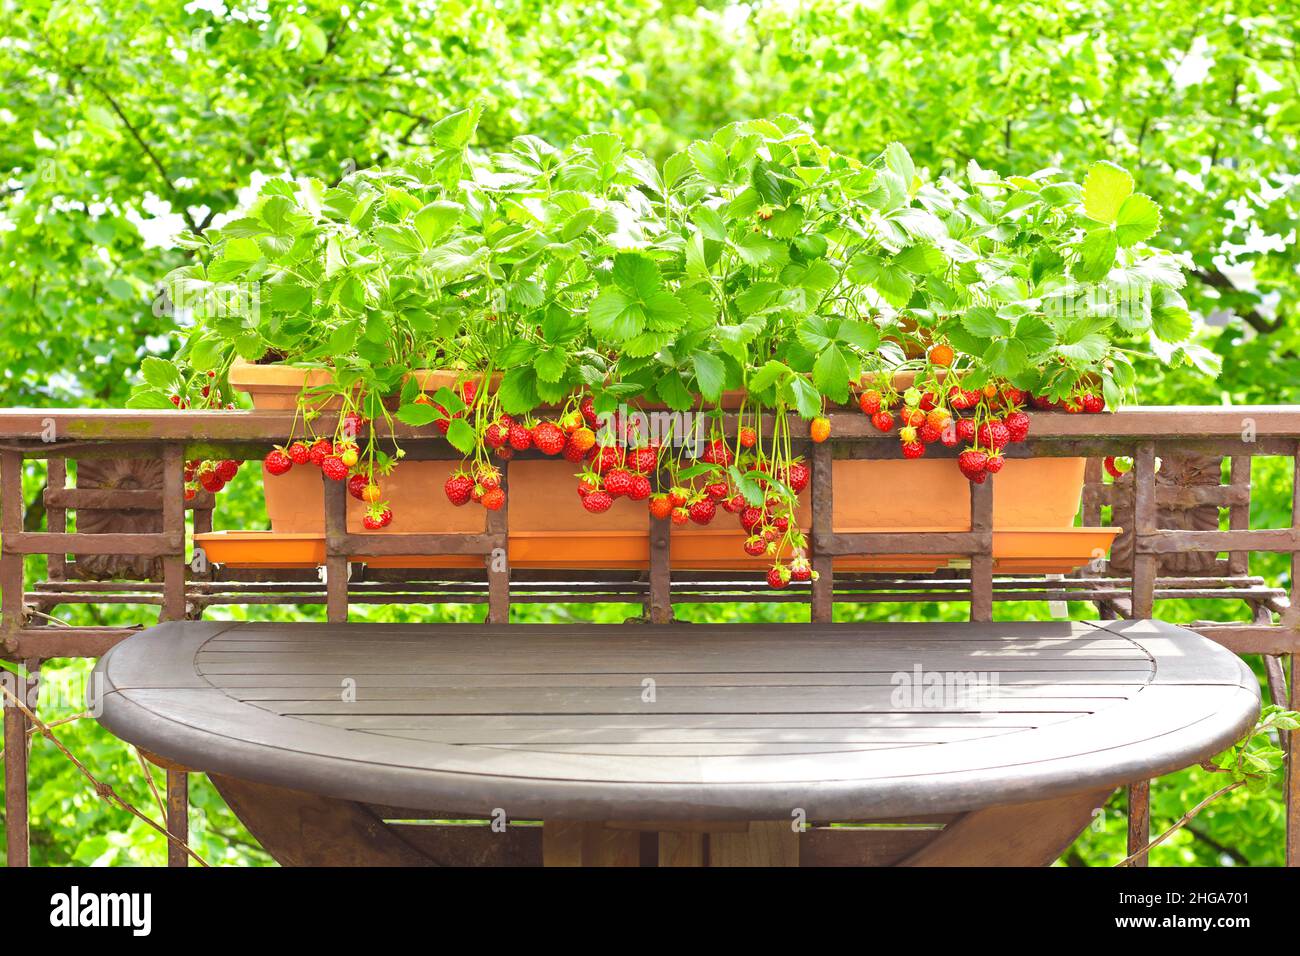 Las plantas de la fresa con porciones de fresas rojas maduras en un plantador de la barandilla del balcón, del apartamento o del concepto que cultiva un huerto del envase. Foto de stock